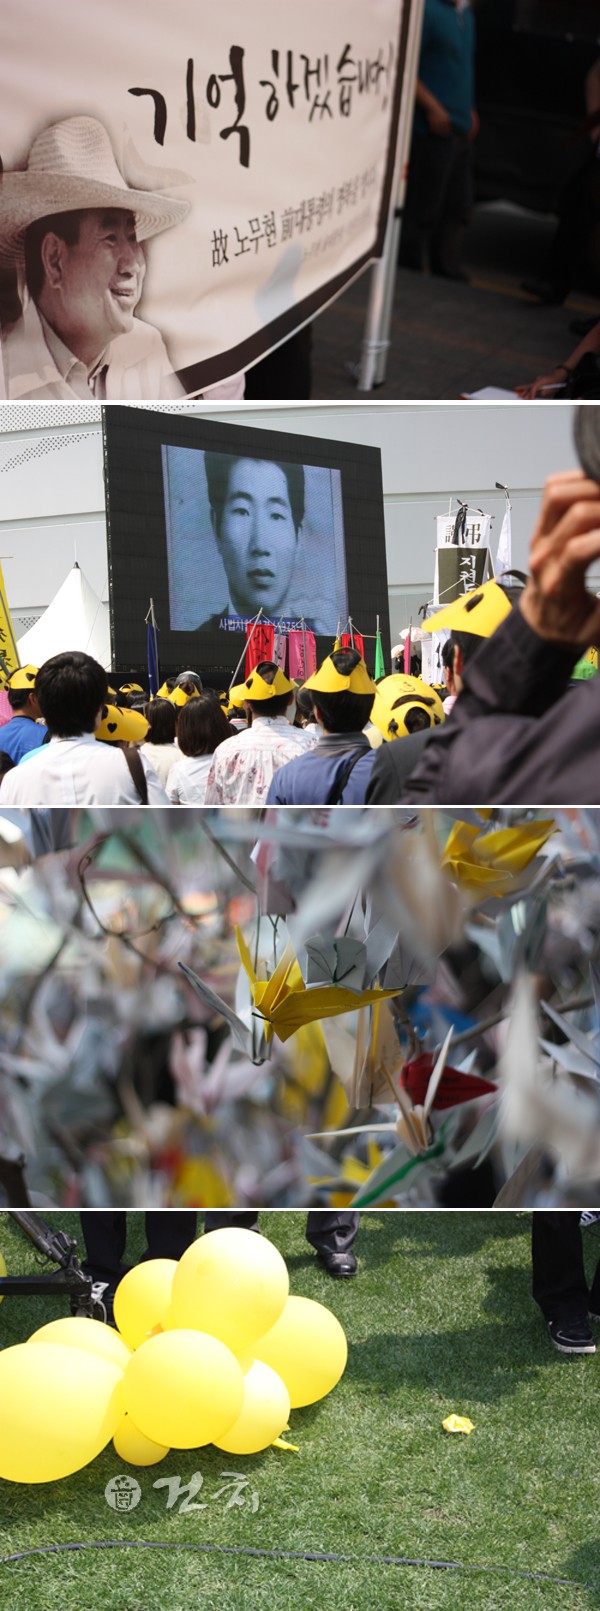 서울광장에 모인 시민들은 '기억하겠습니다'는 문구의 플랭카드를 곳곳에 붙여두었다. 또한 노무현 전 대통령을 위한 노란 학나무를 만들어 못다한 말 등을 남기기도 했다.